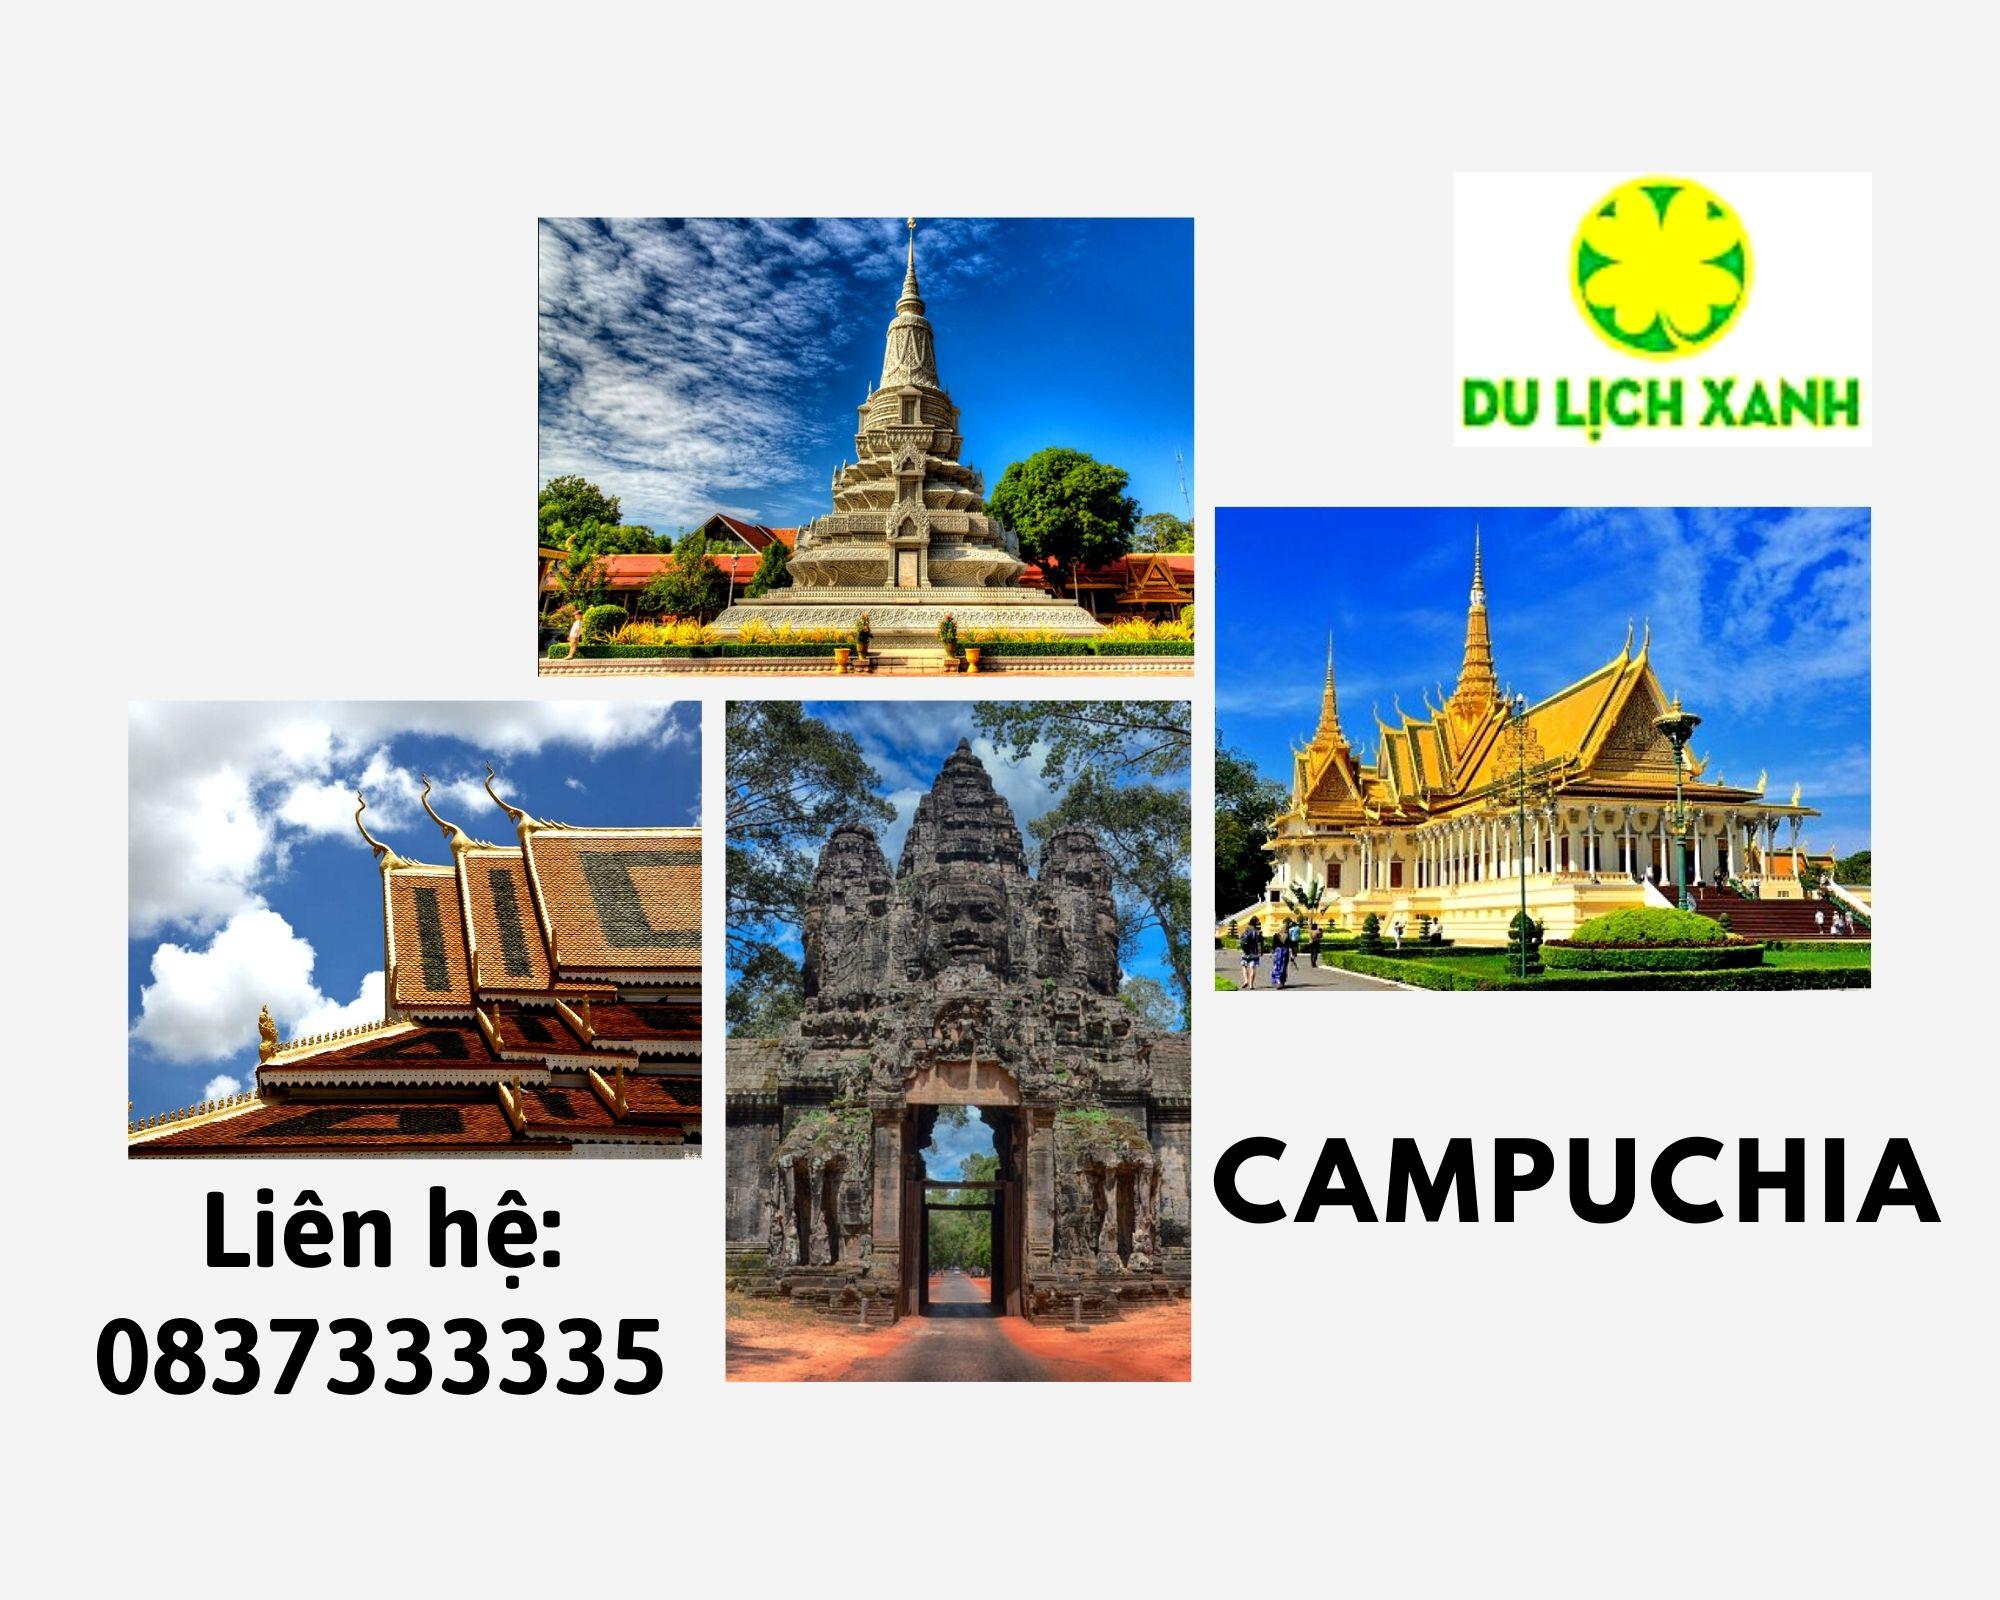 Tour du lịch Campuchia Siem Riep - Phnompenh giá tốt khởi hành từ Sài Gòn 